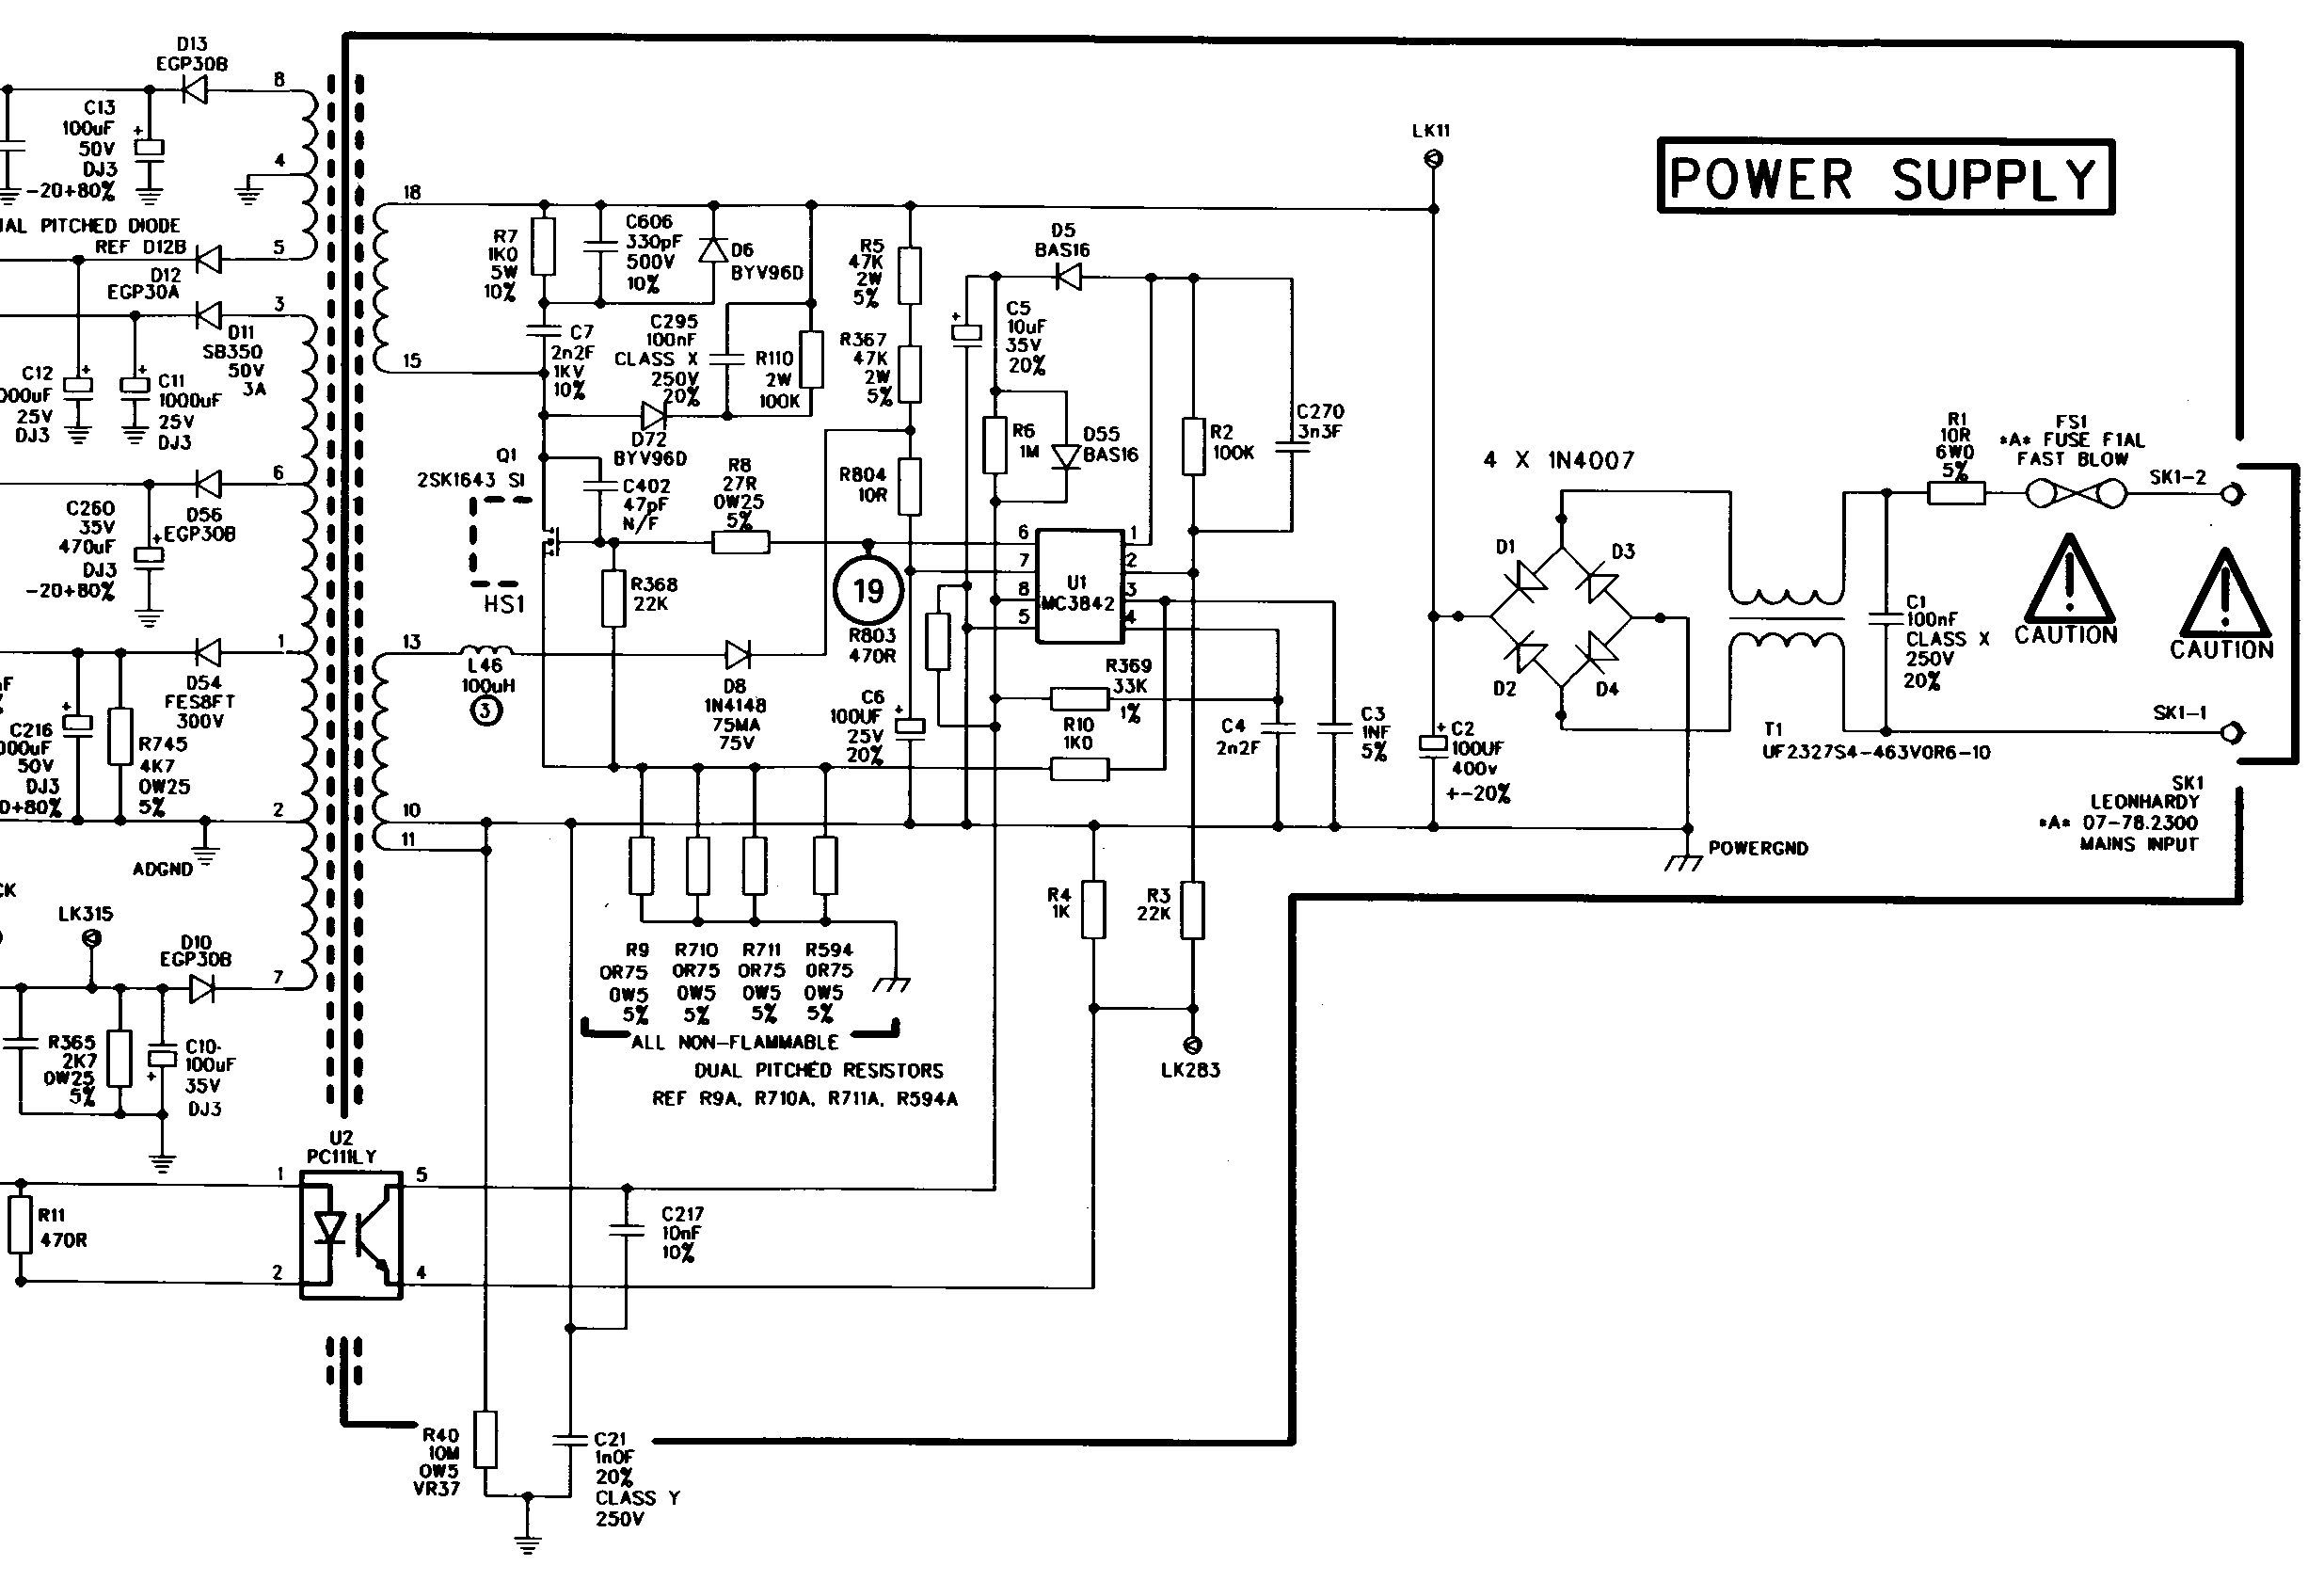 MSS500/1000 PSU primary circuit.